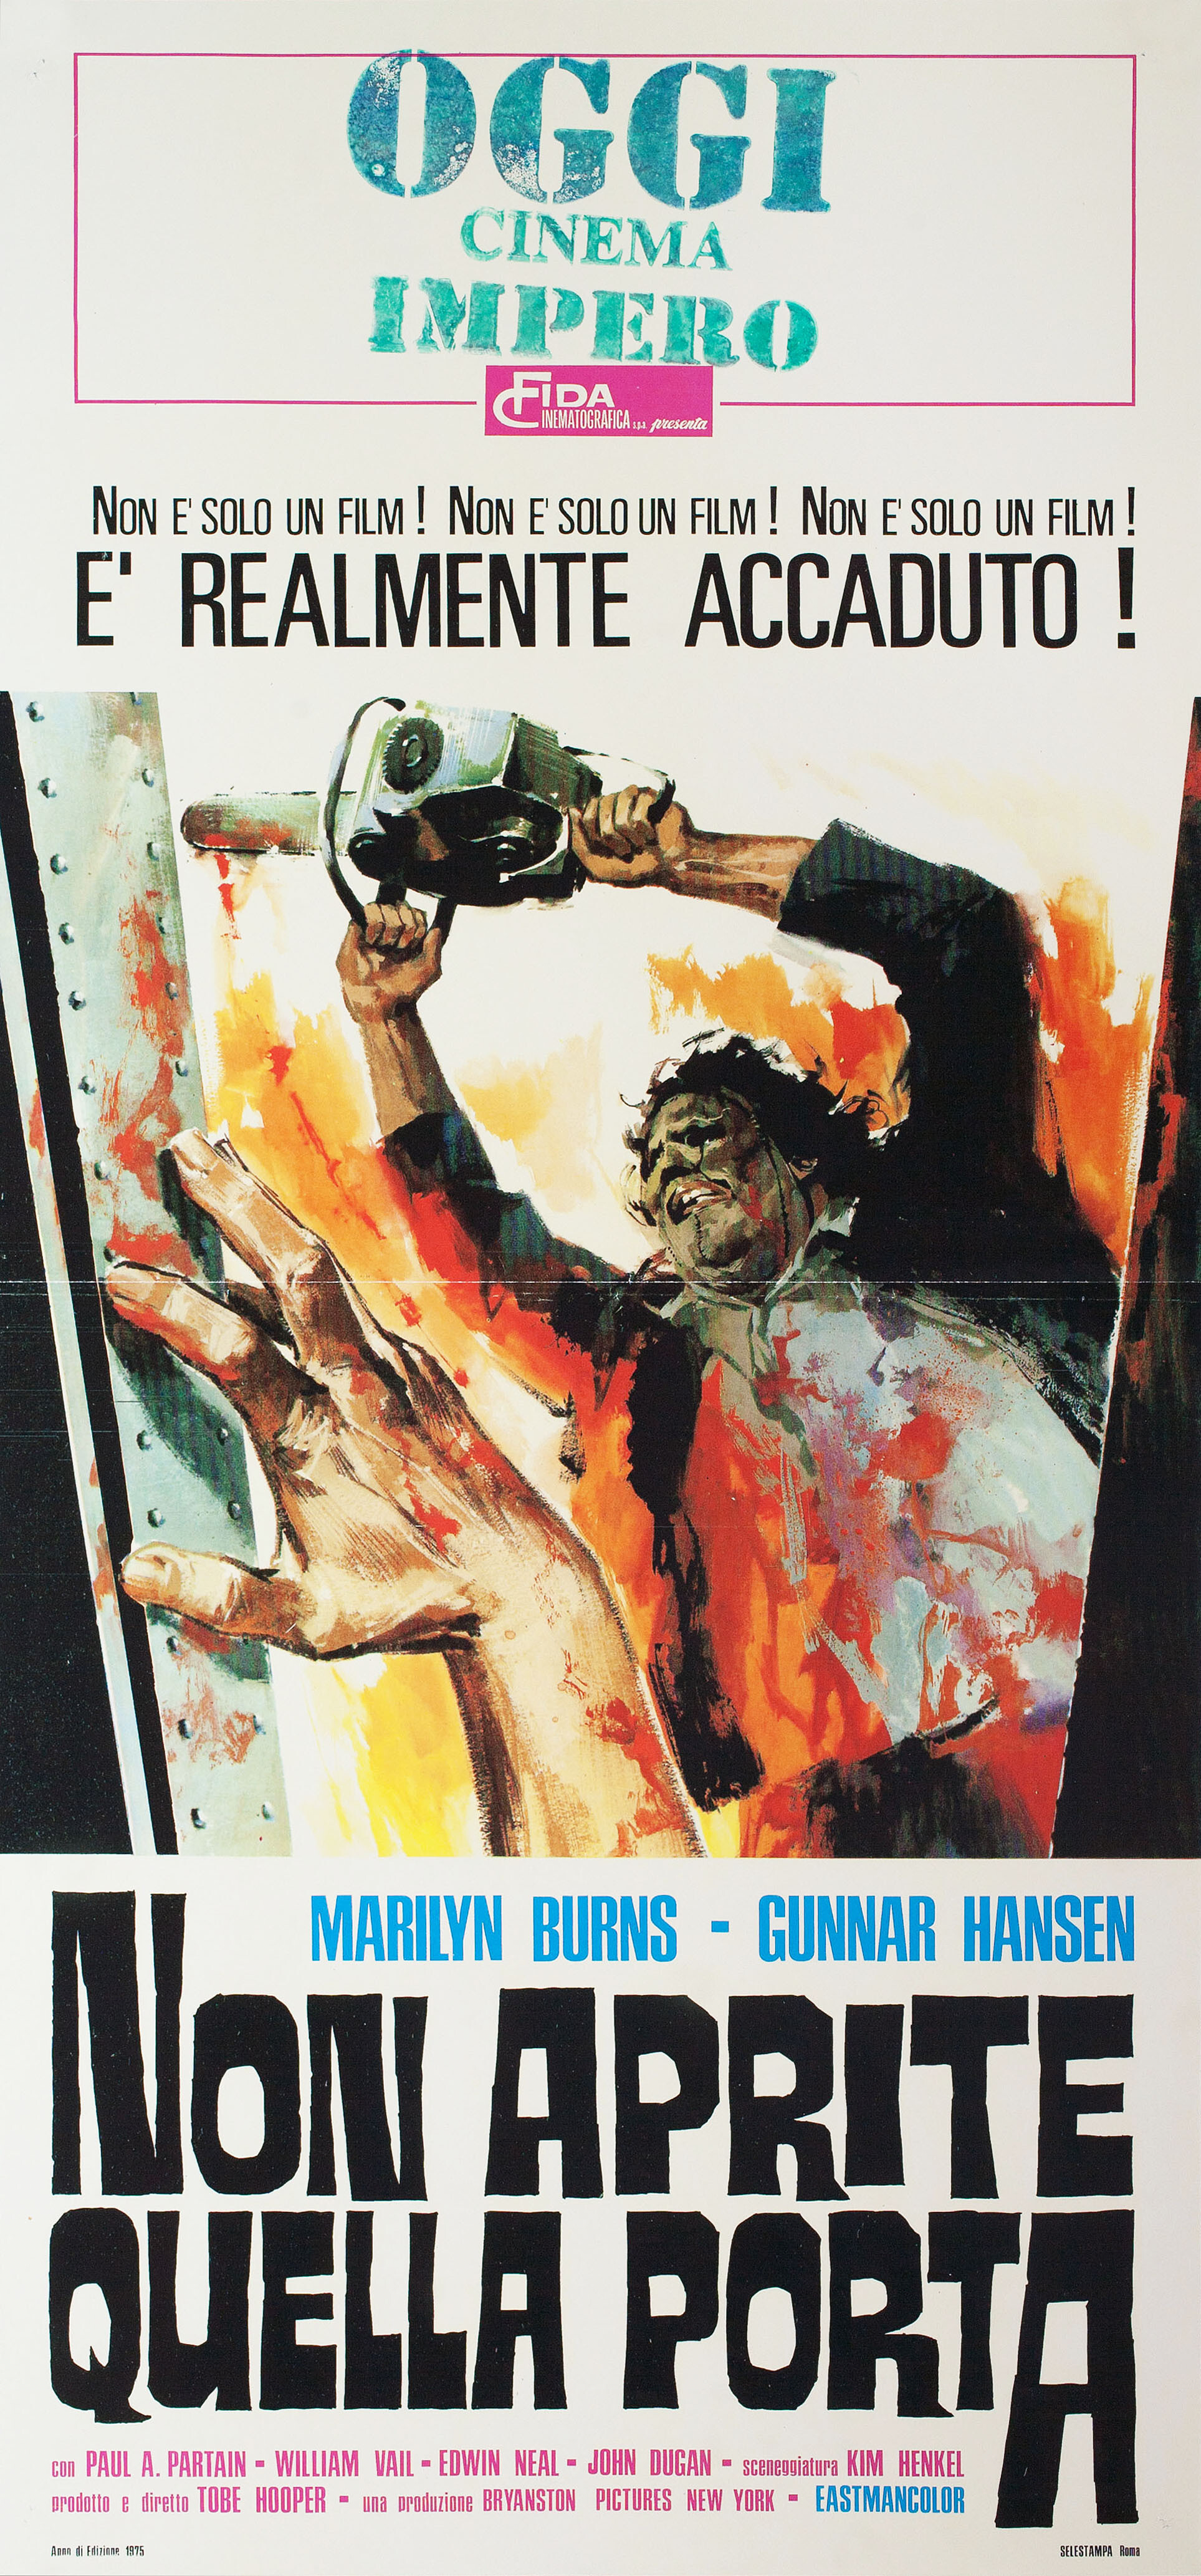 Техасская резня бензопилой (The Texas Chainsaw Massacre, 1974), режиссёр Тоуб Хупер, итальянский постер к фильму, автор Сандро Симеони (ужасы, 1975 год)